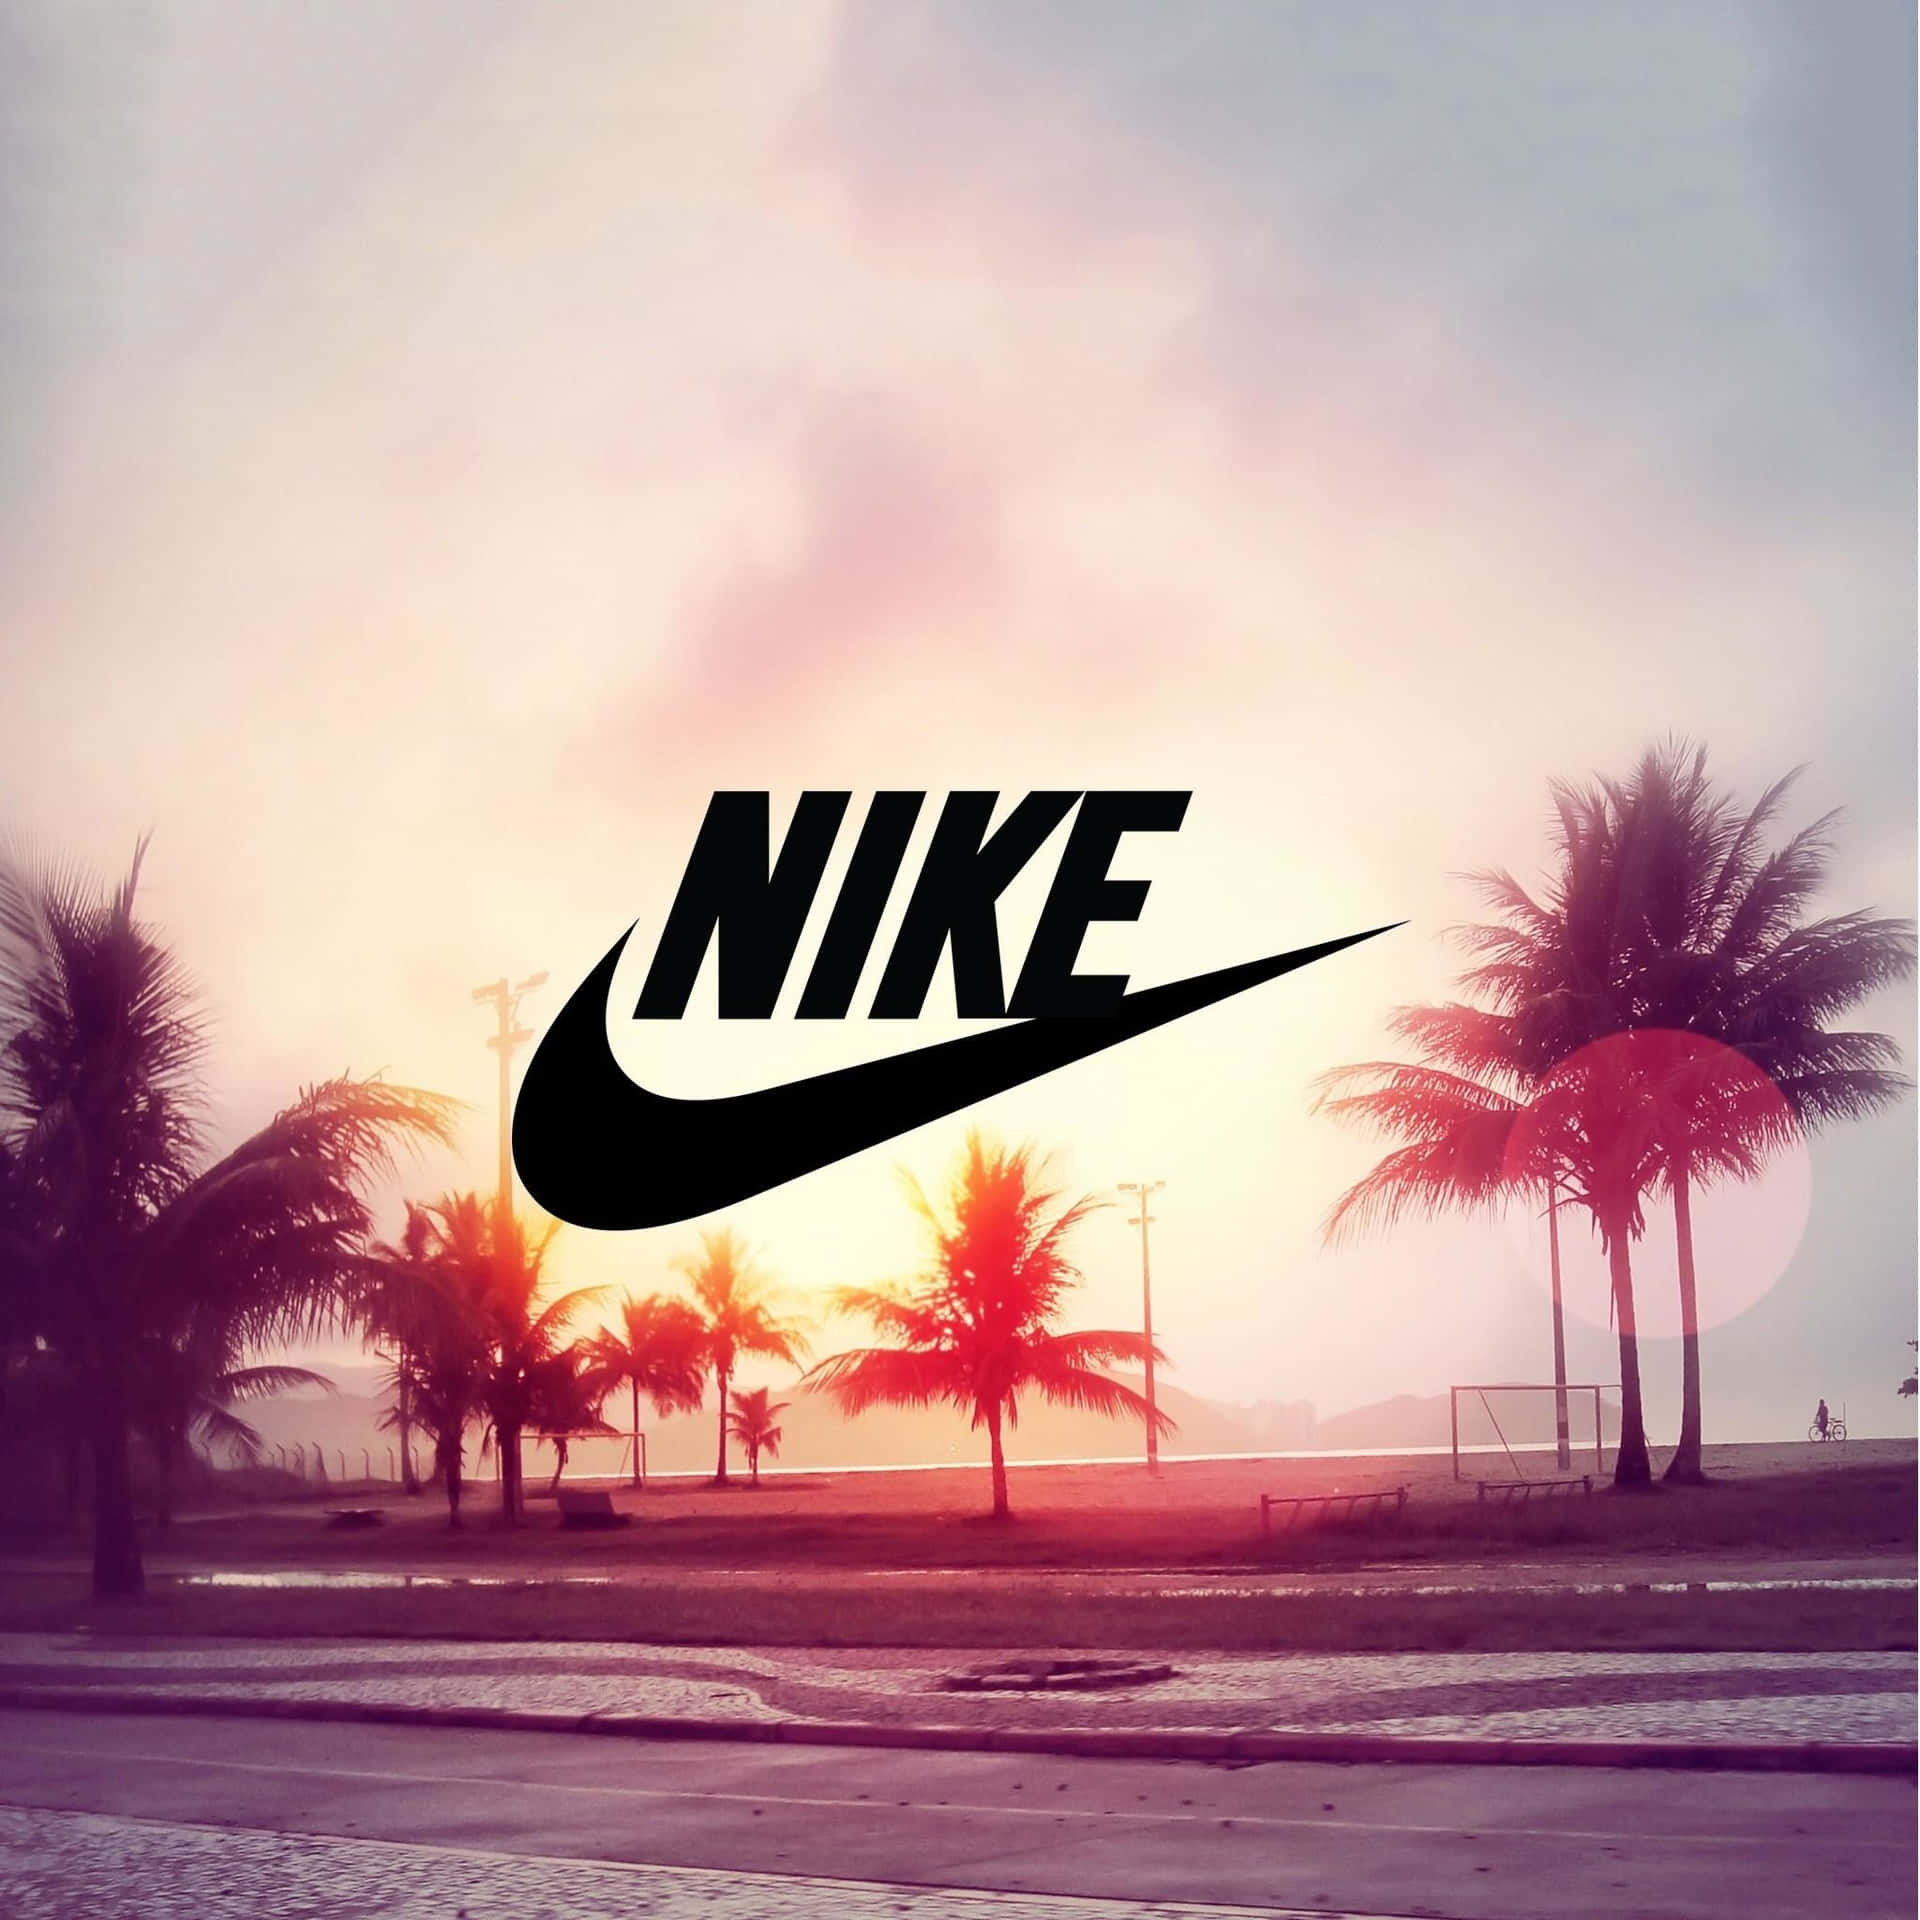 Nike Tropical Sunset Aesthetic Wallpaper